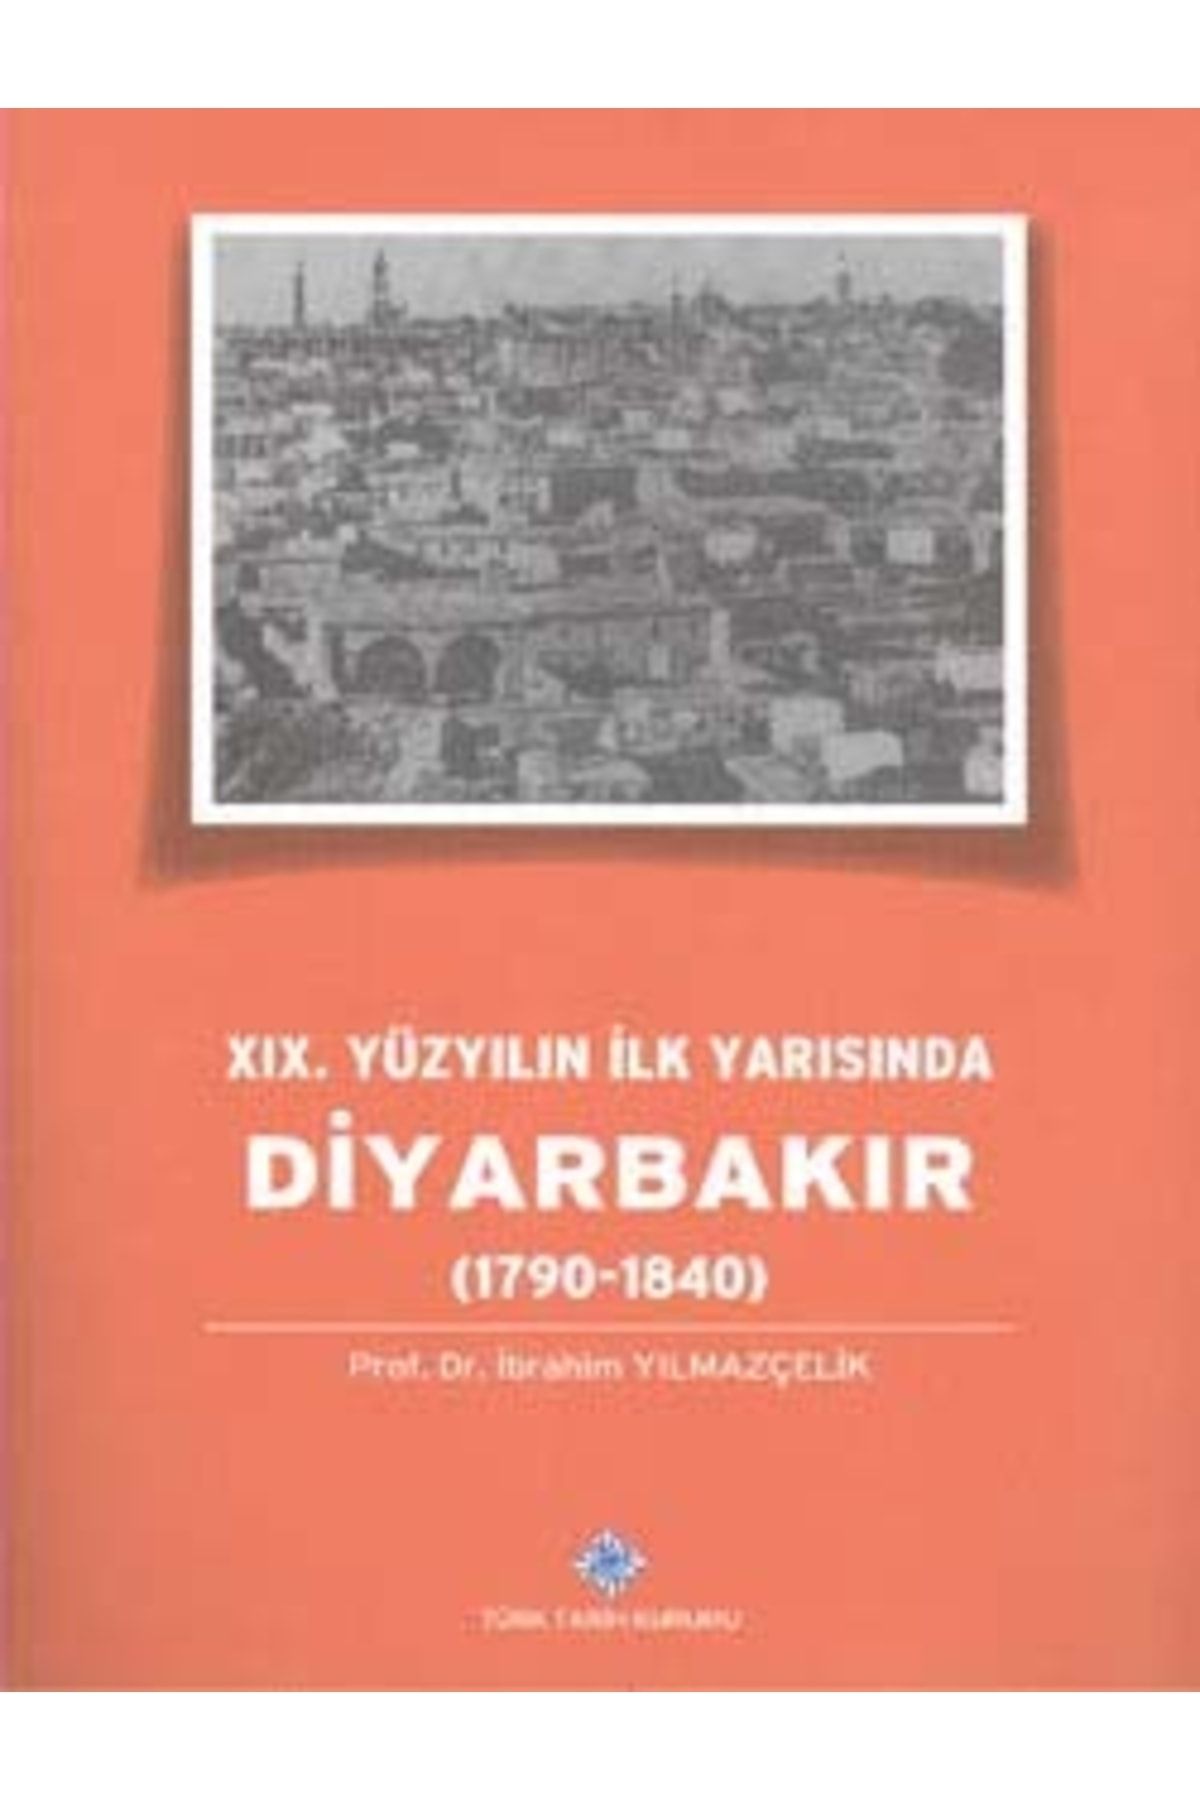 Türk Tarih Kurumu Yayınları Xıx. Yüzyılın Ilk Yarısında Diyarbakır (1790-1840), 2014